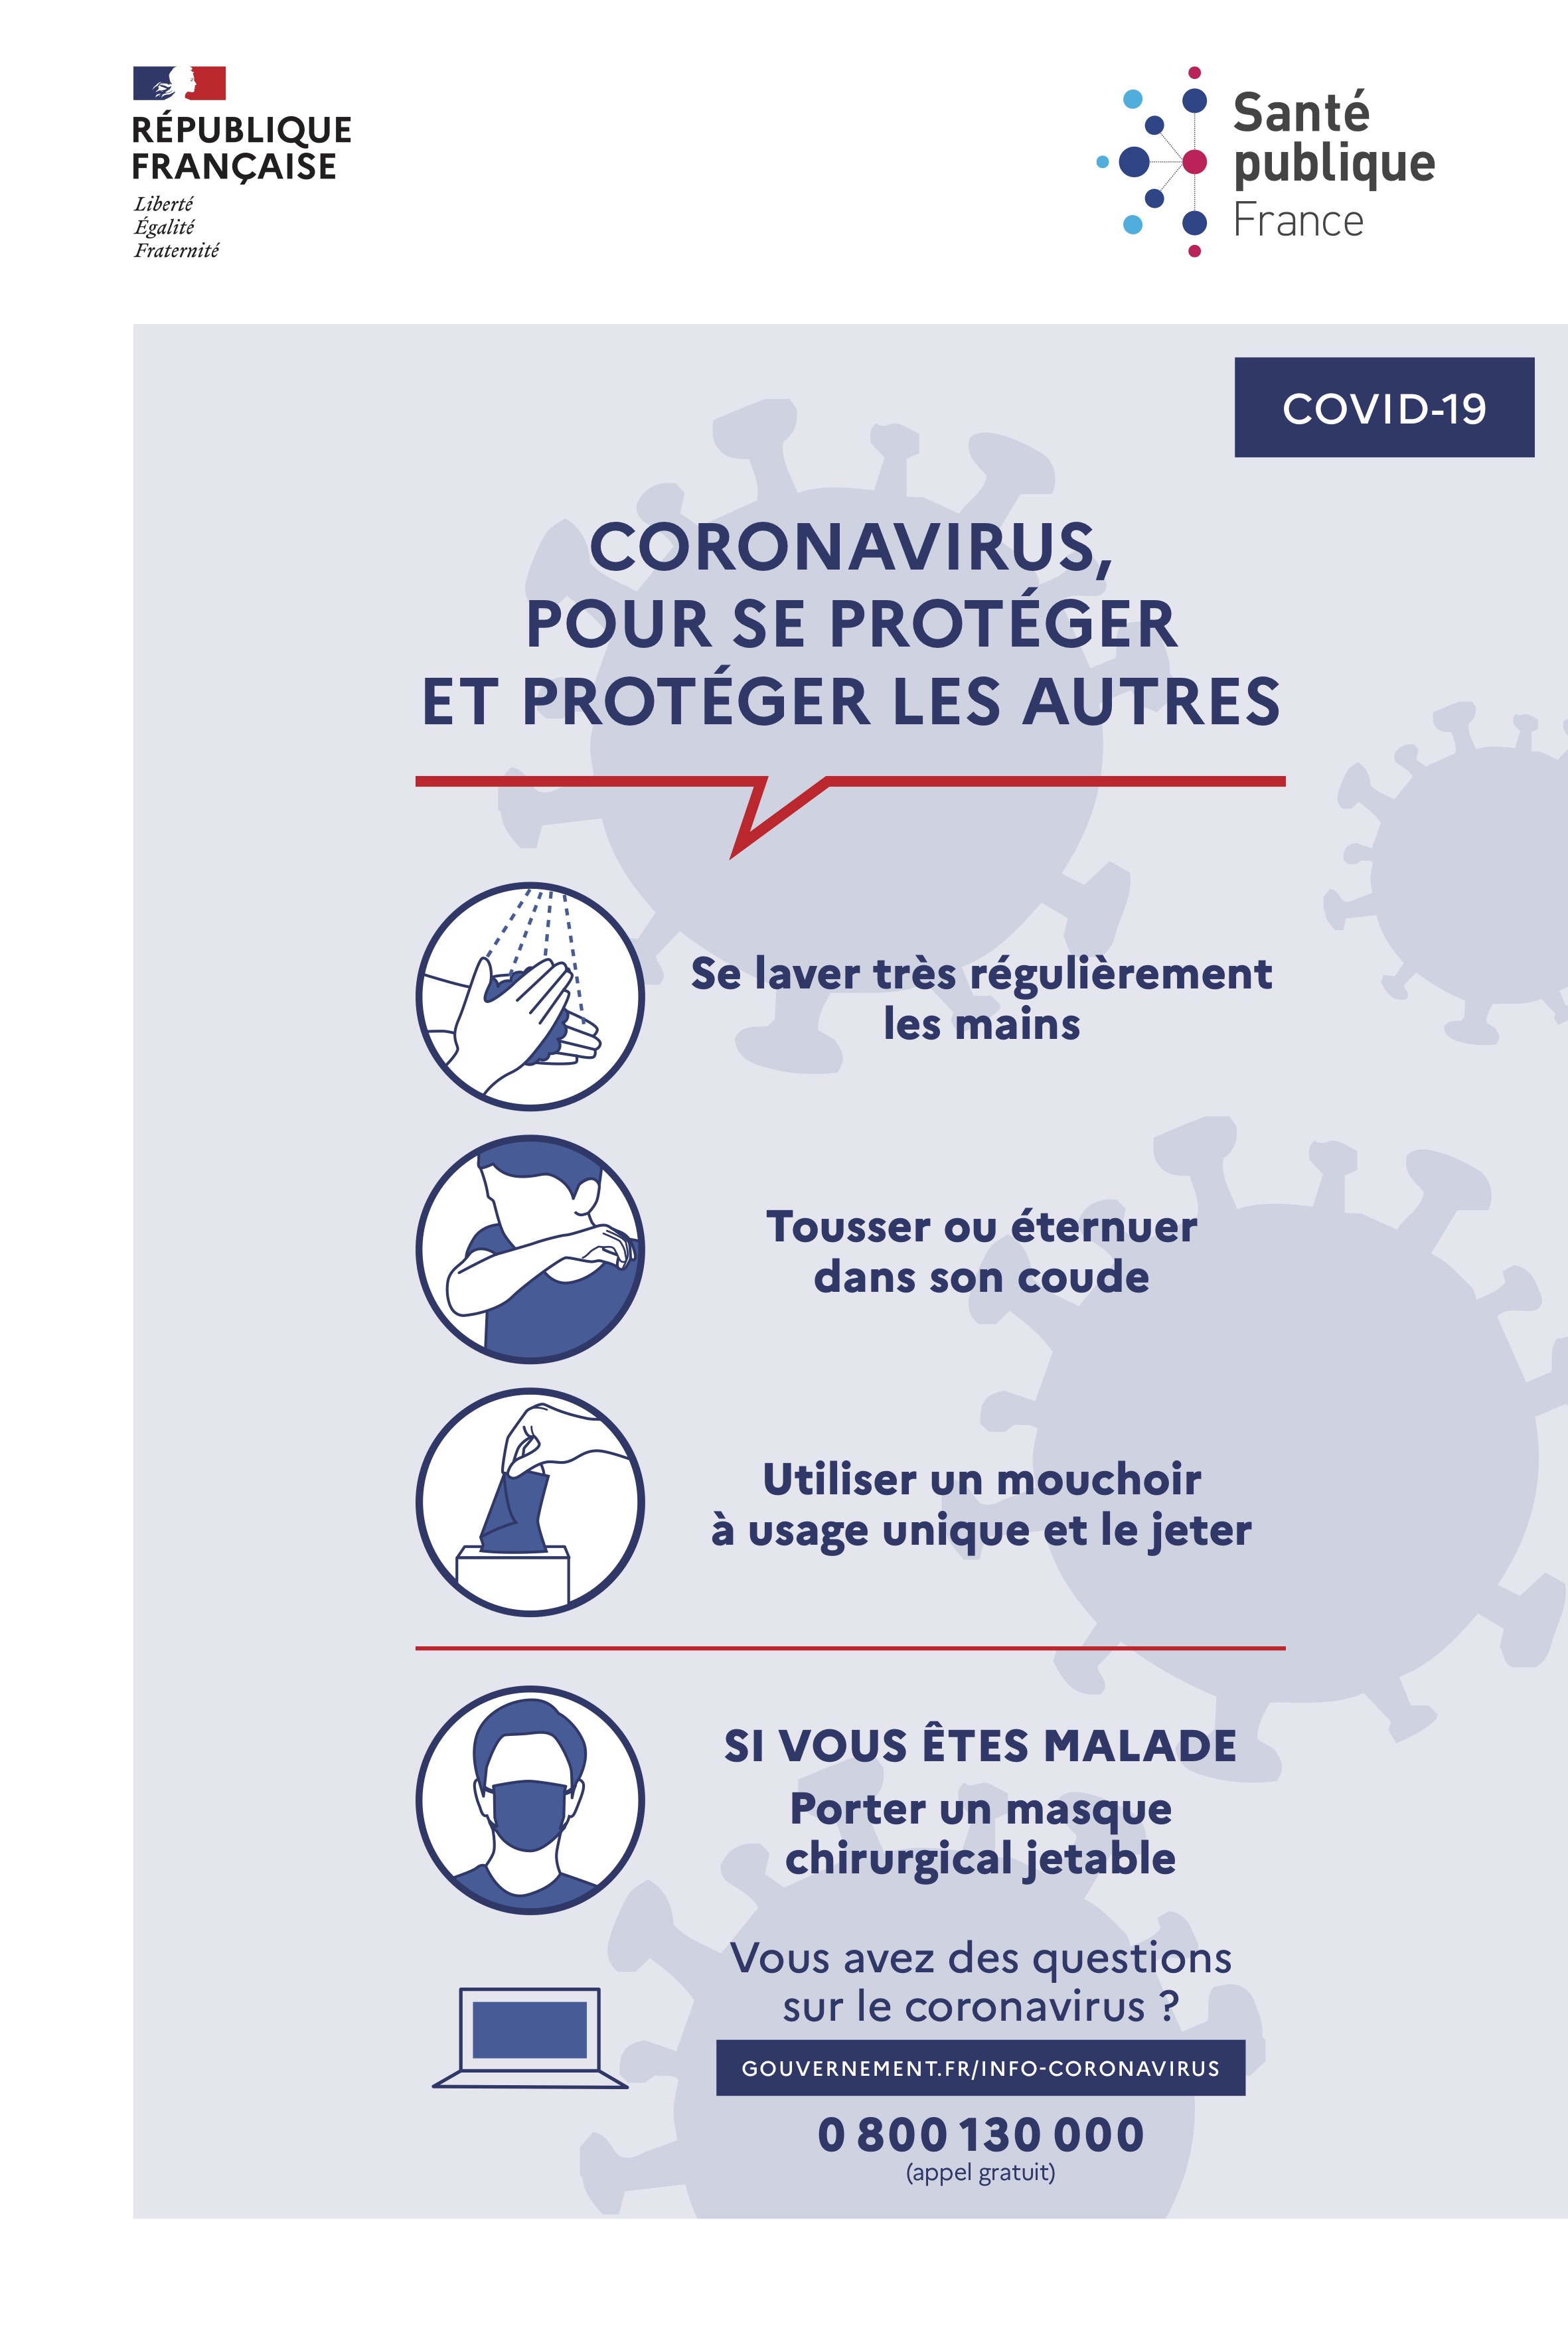 Les gestes barrière pour se protéger du Coronavirus